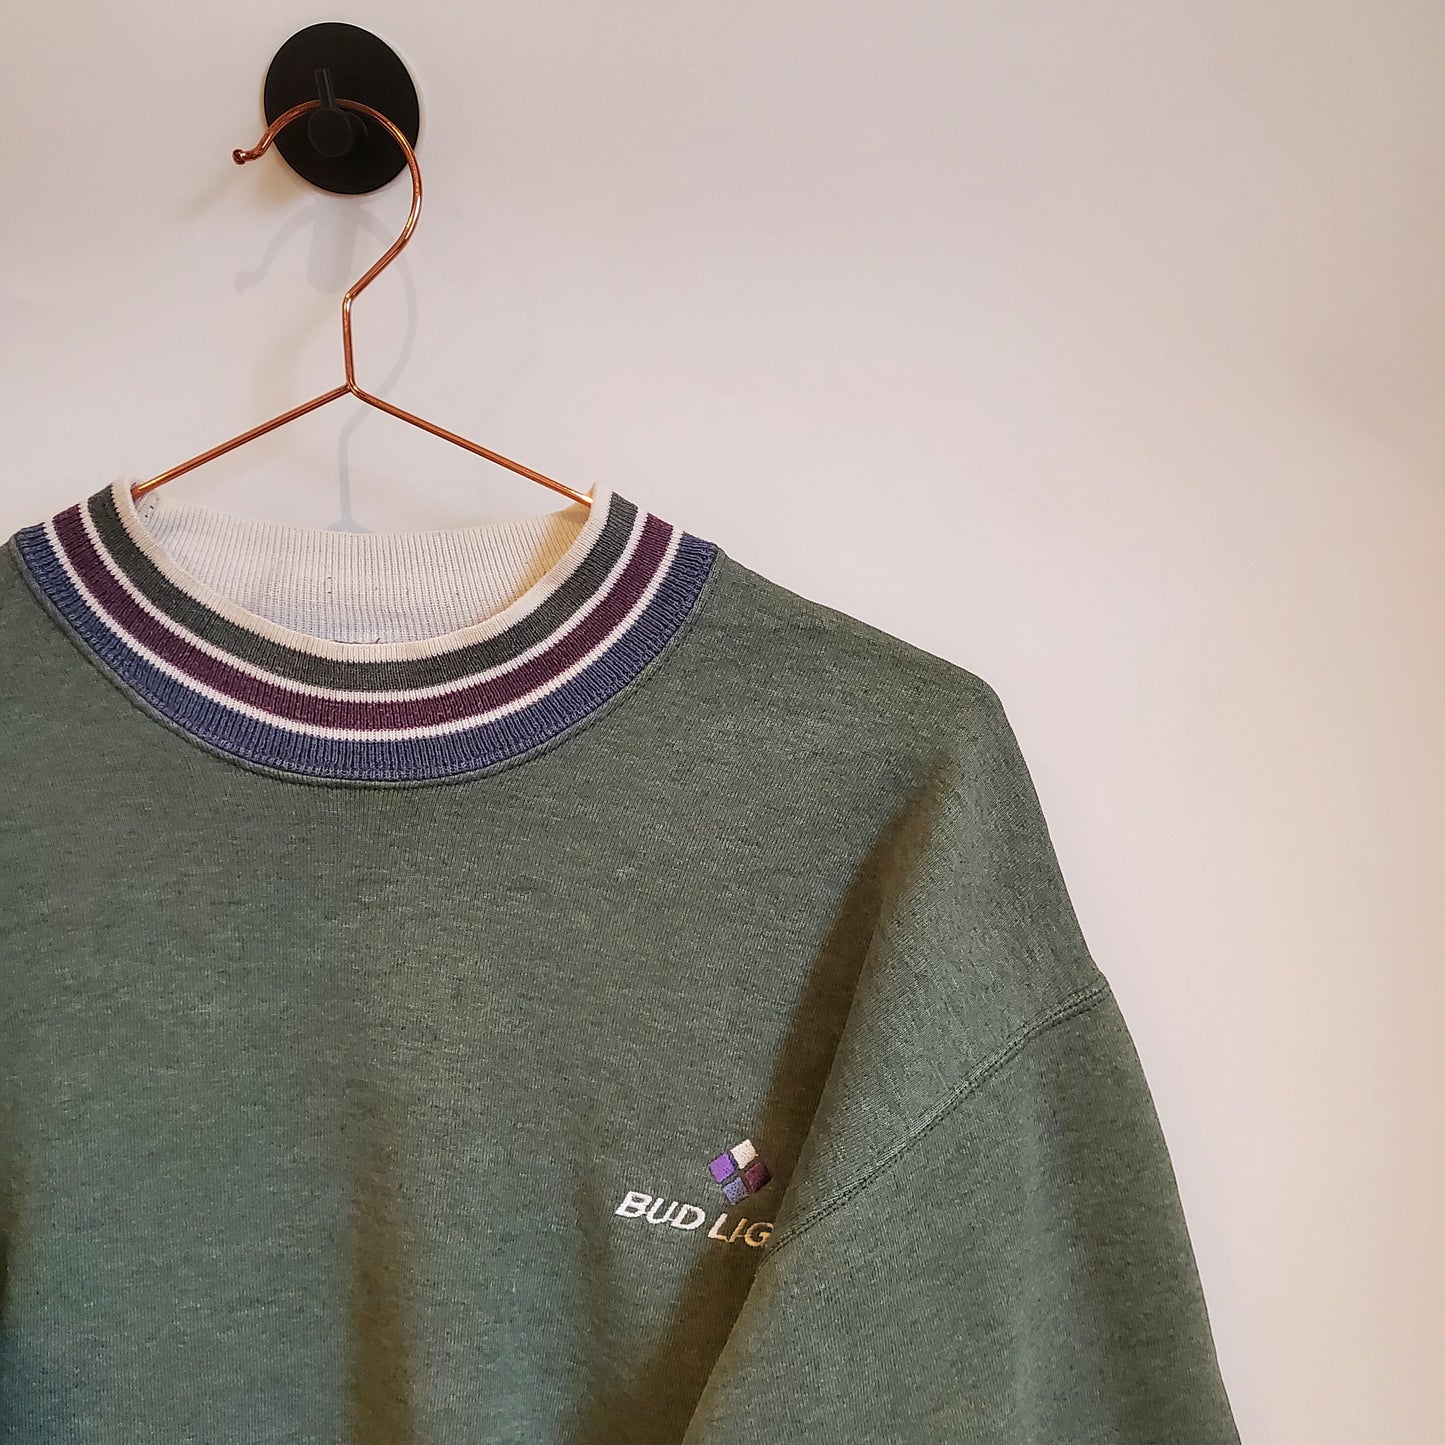 Vintage 90s Bud Light Embroidered Sweatshirt | Size M